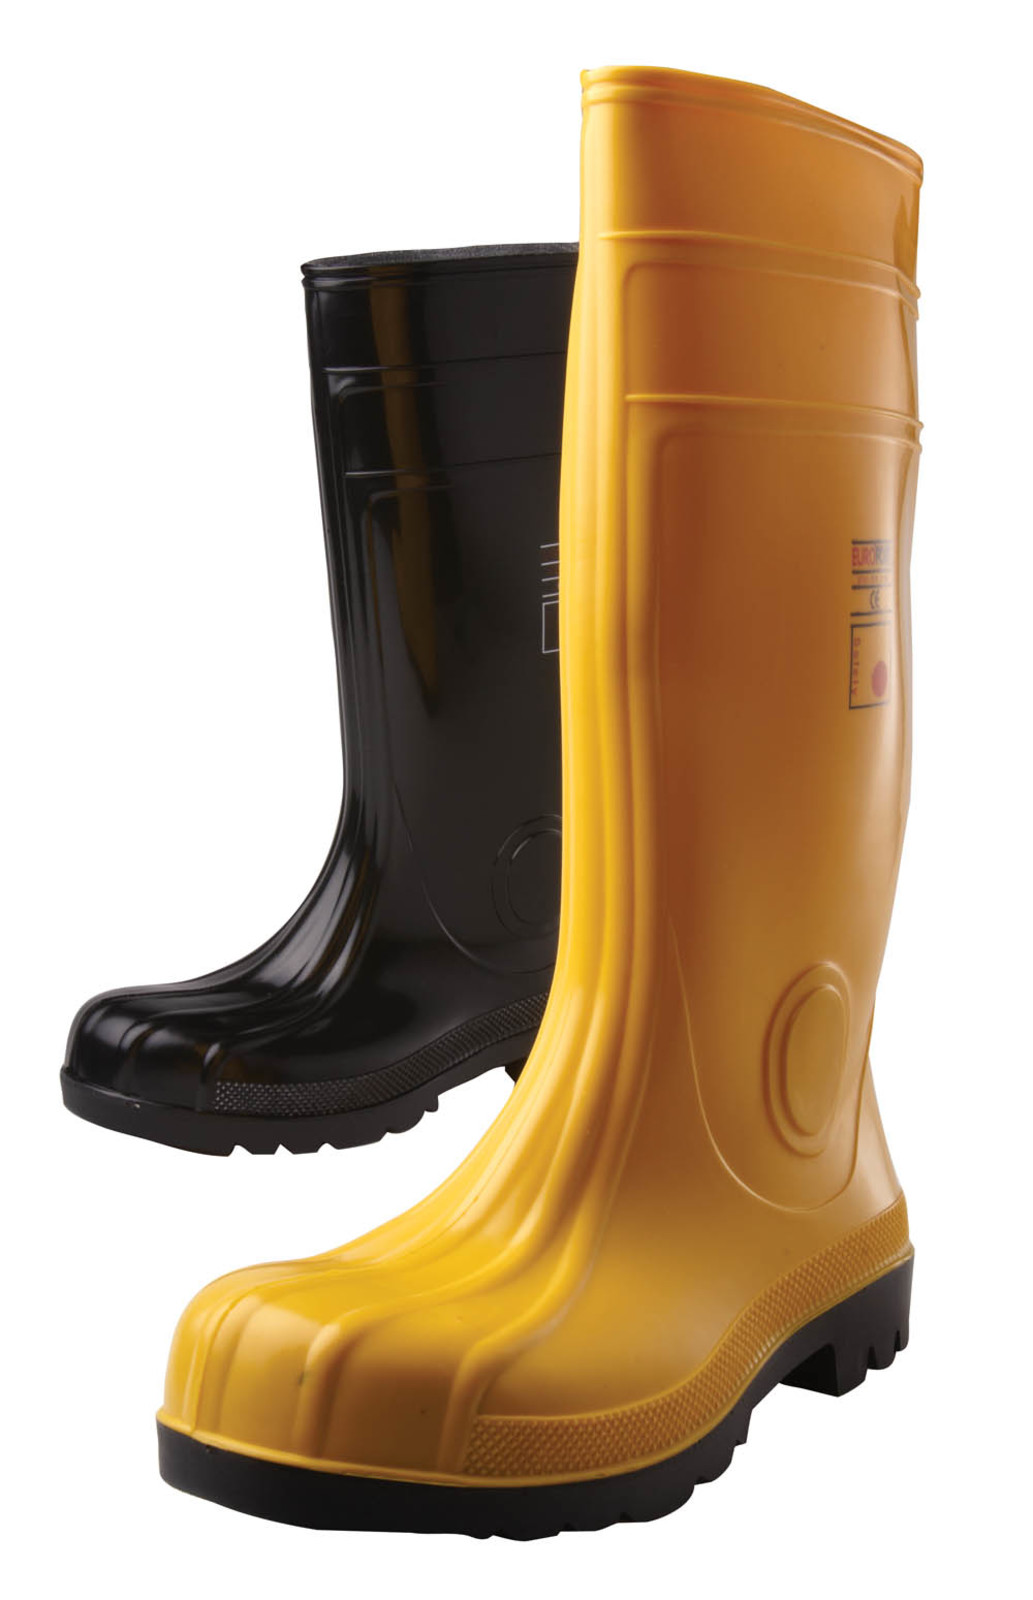 Gumáky Boots Eurofort  S5 - veľkosť: 48, farba: čierna